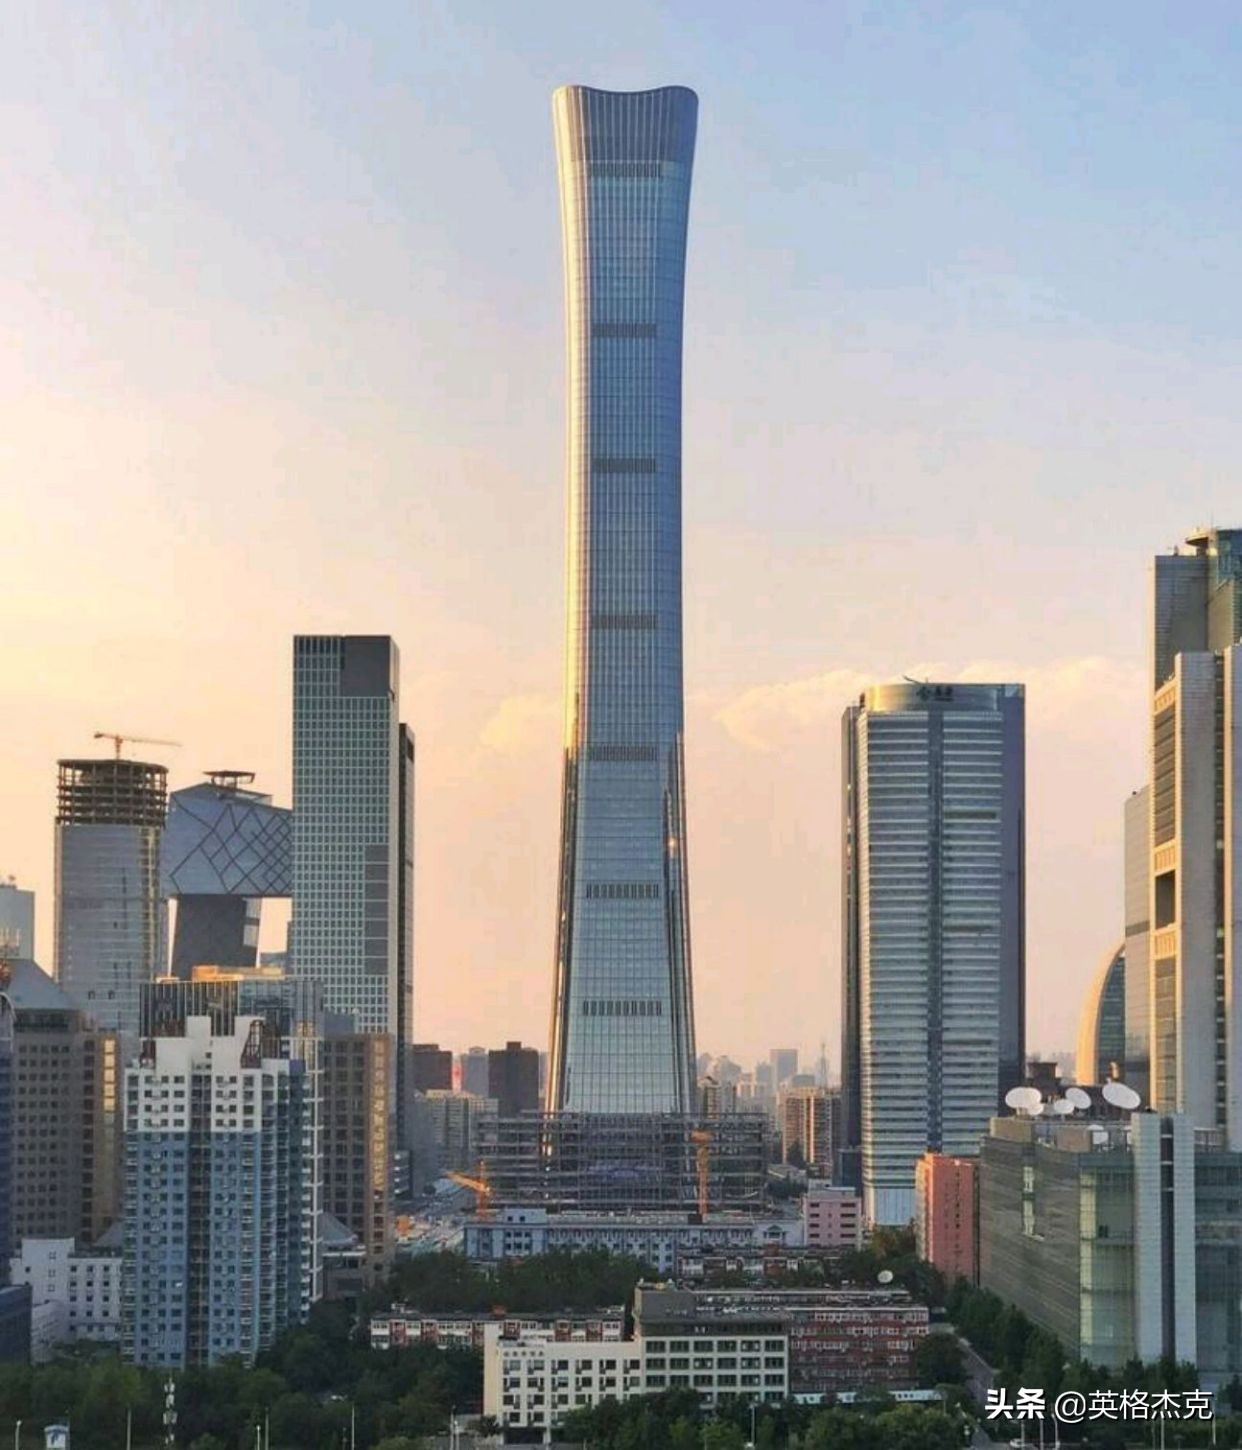 英国游客拍到北京第一高楼照片,引发热议:中国建设很强大